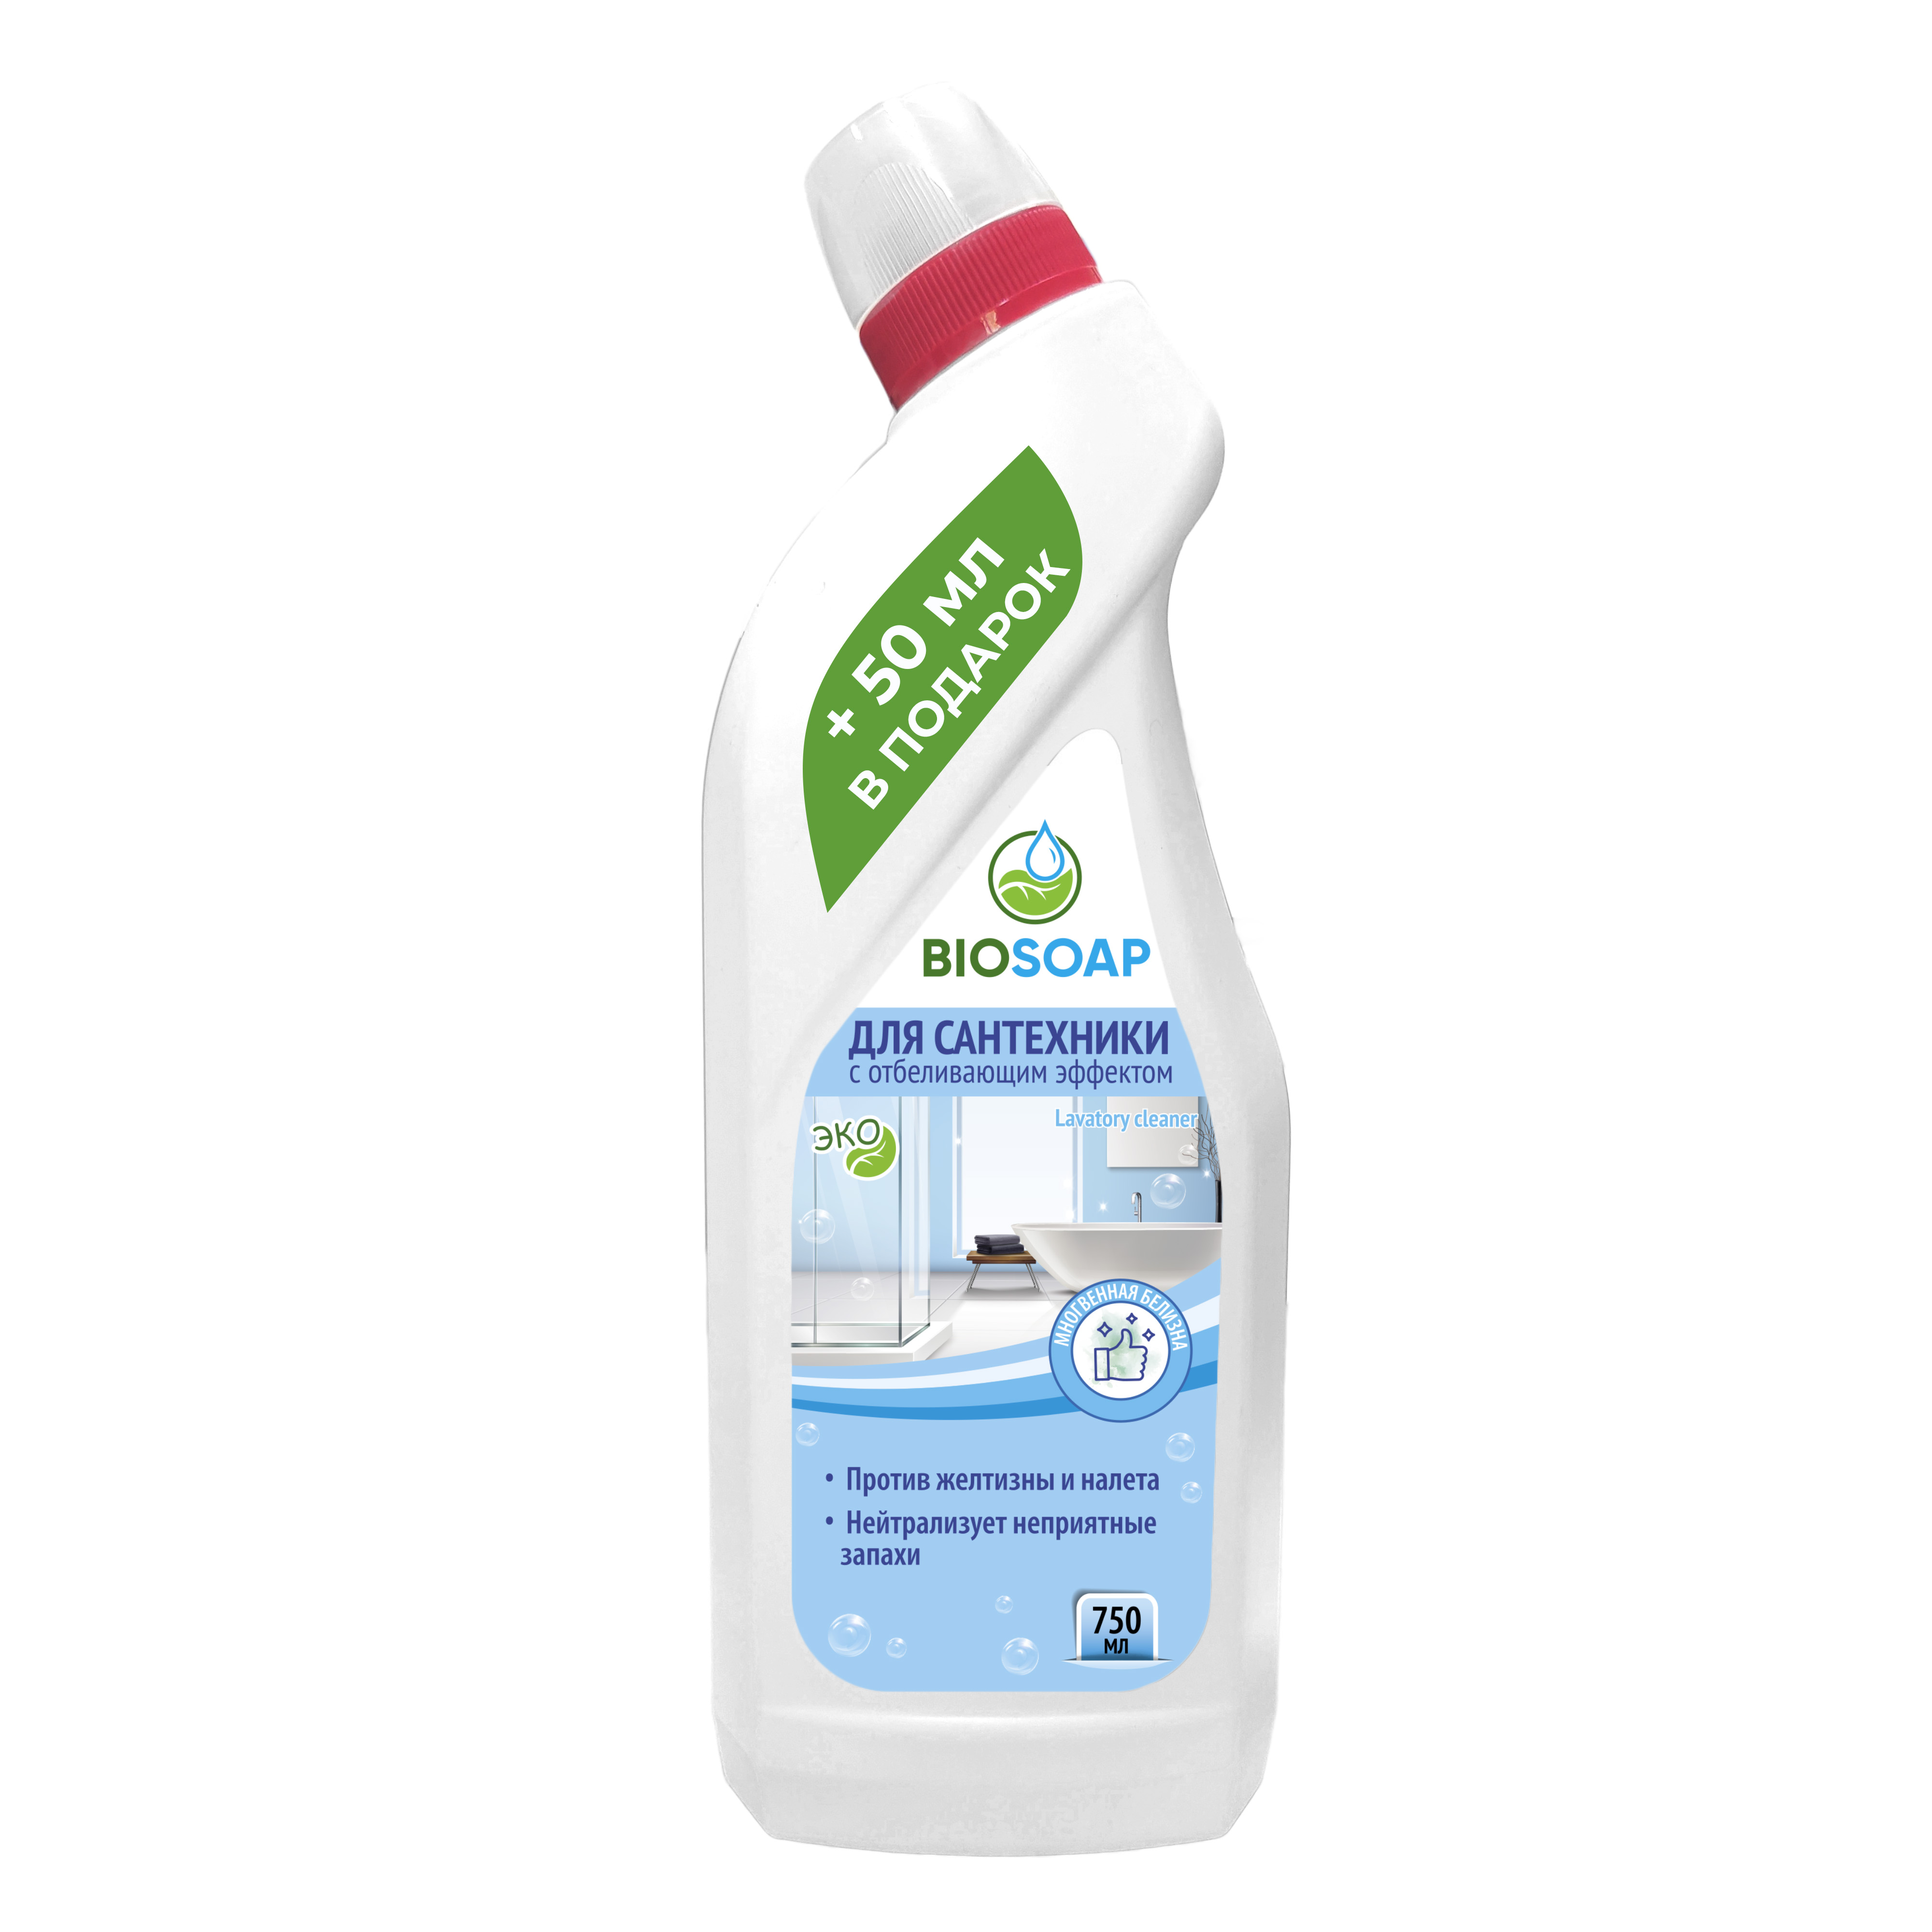 Средство для сантехники Biosoap с отбеливающим эффектом 750 мл средство для чистки унитаза biosoap wc cleaner 750 мл